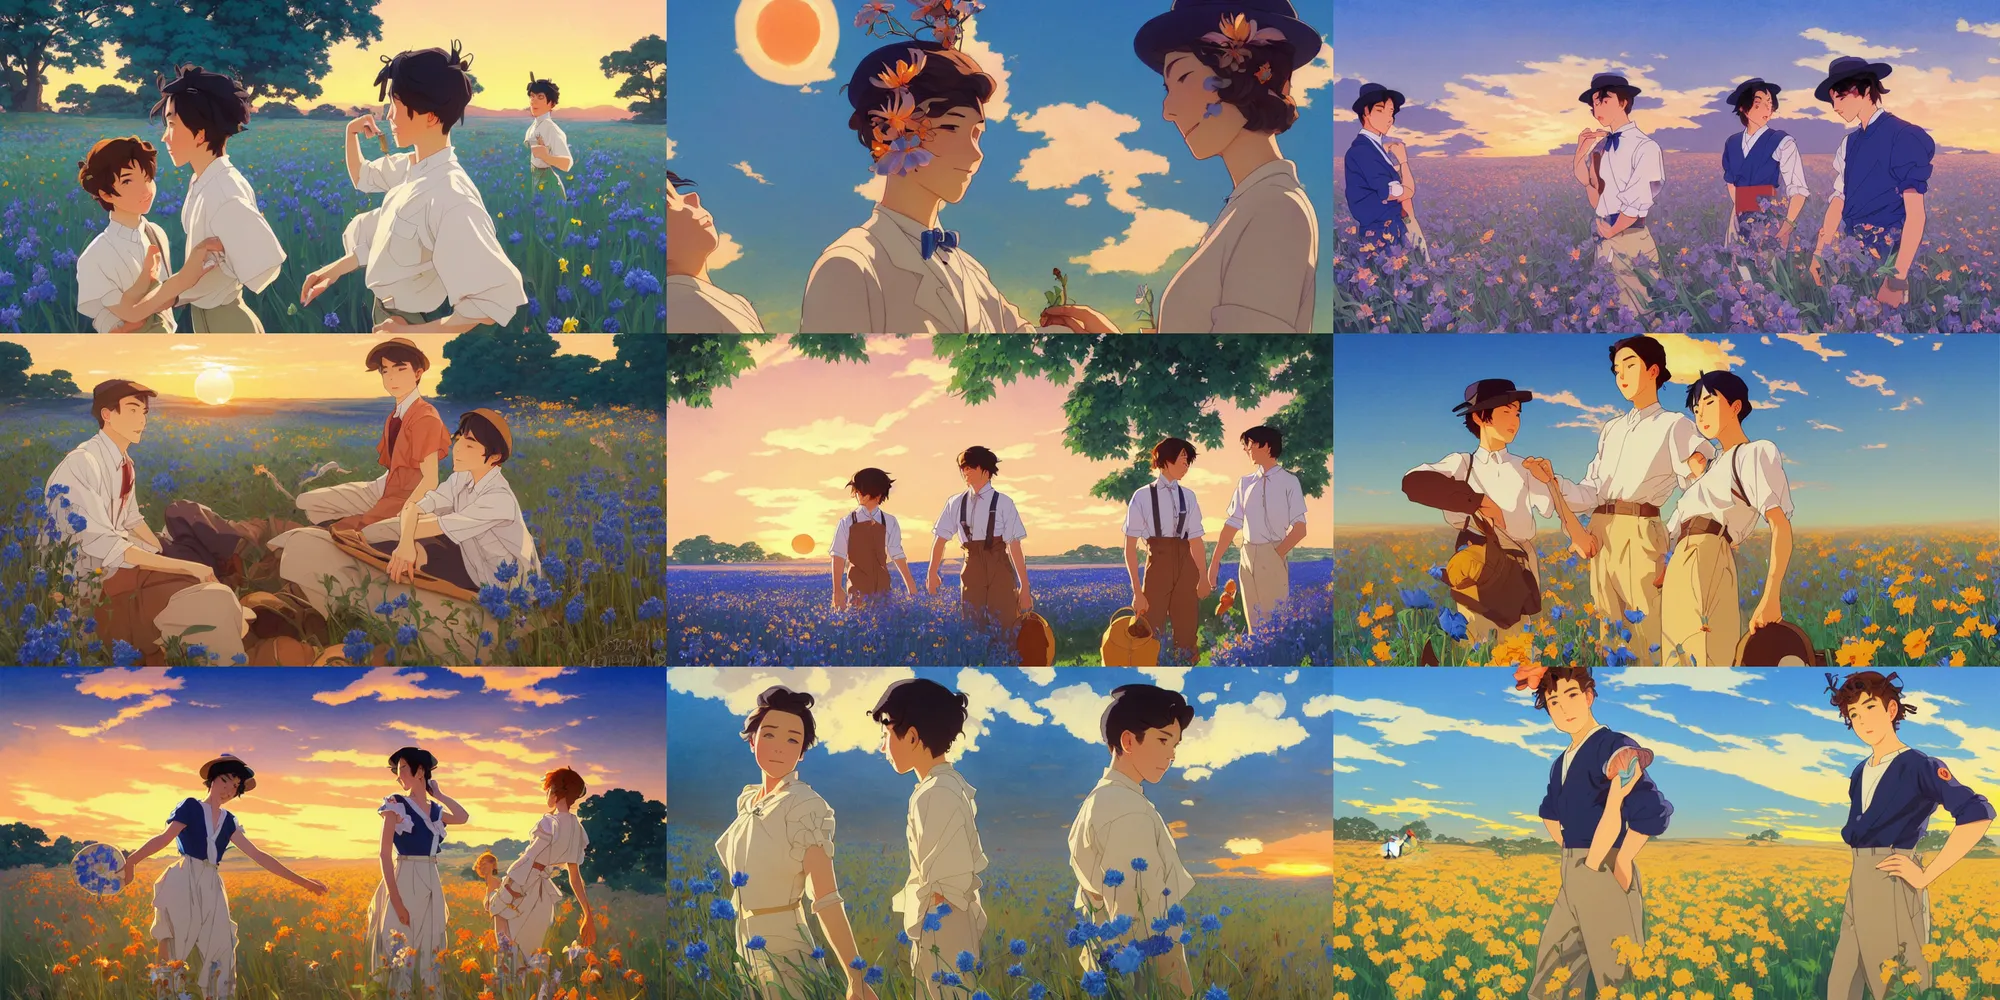 Prompt: sunset, blue flower field, cute boys, in the style of studio ghibli, j. c. leyendecker, greg rutkowski, artgerm